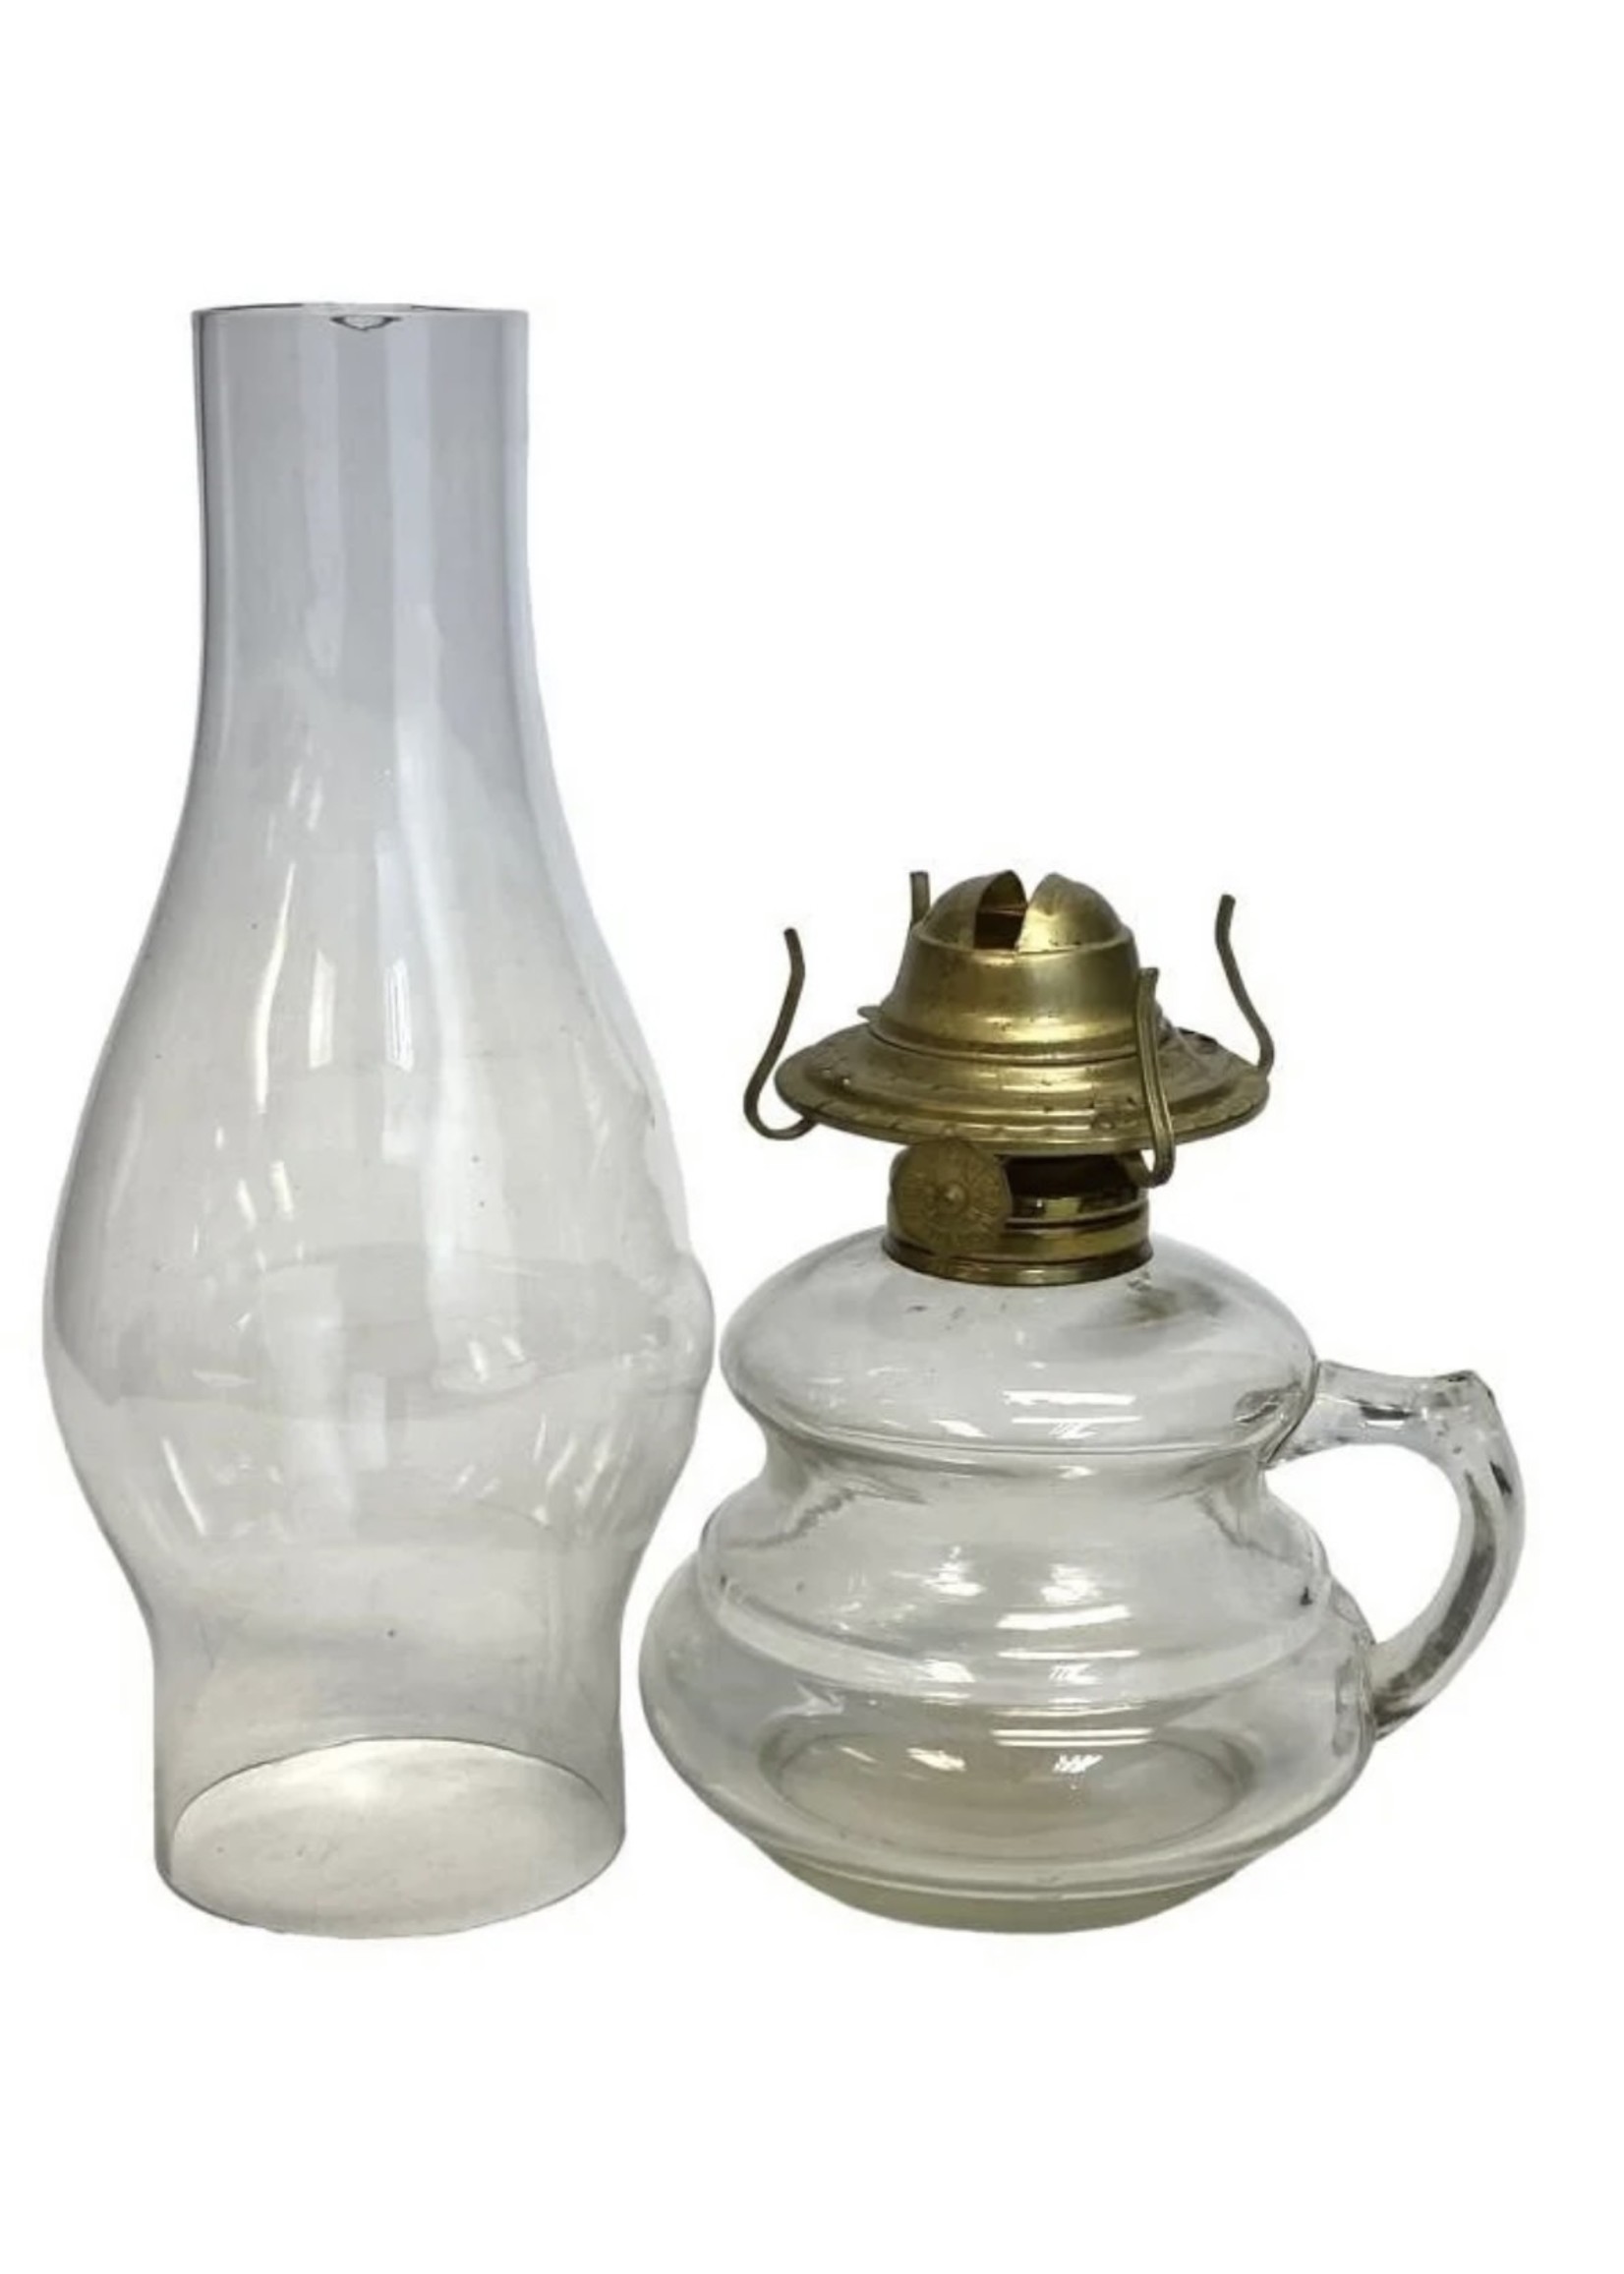 Early 1900's Kerosene/Coal Oil Finger Lamp